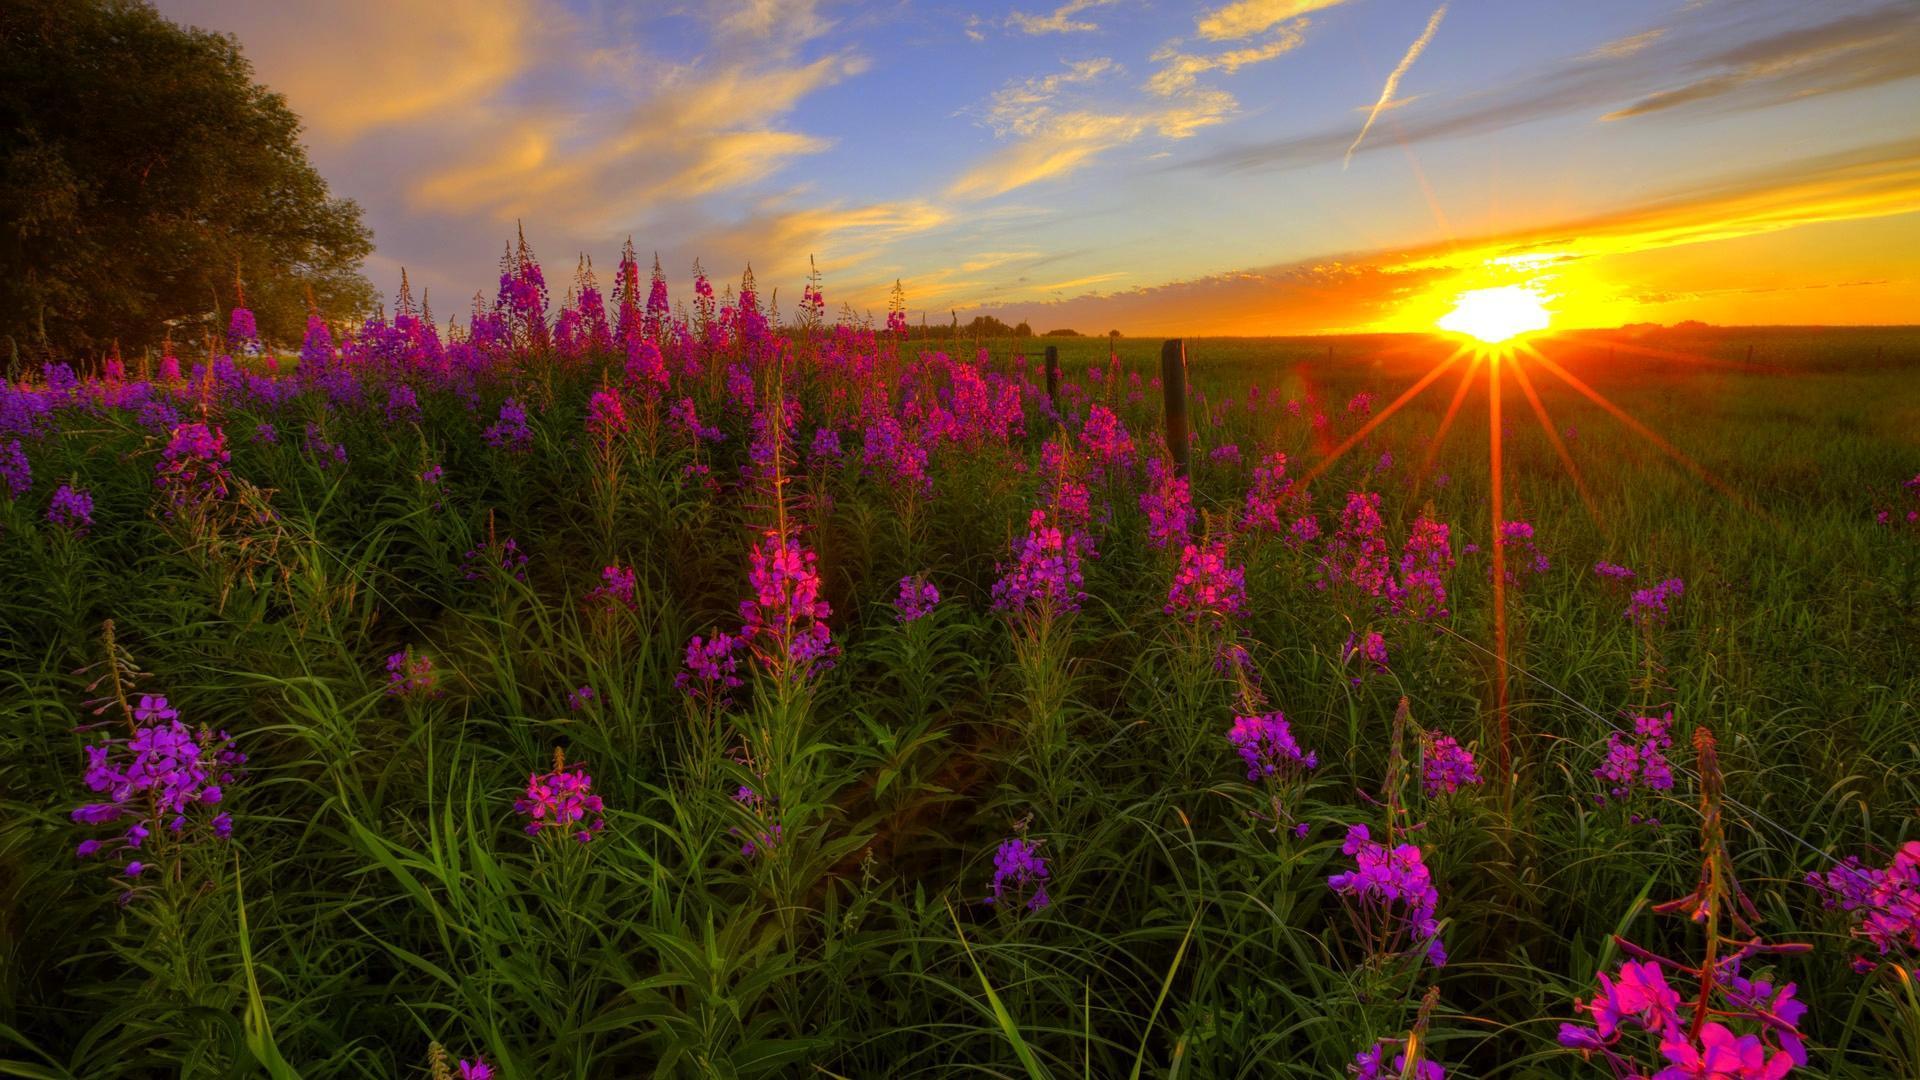 Wild Flowers Sunset HD desktop wallpaper, Widescreen, High